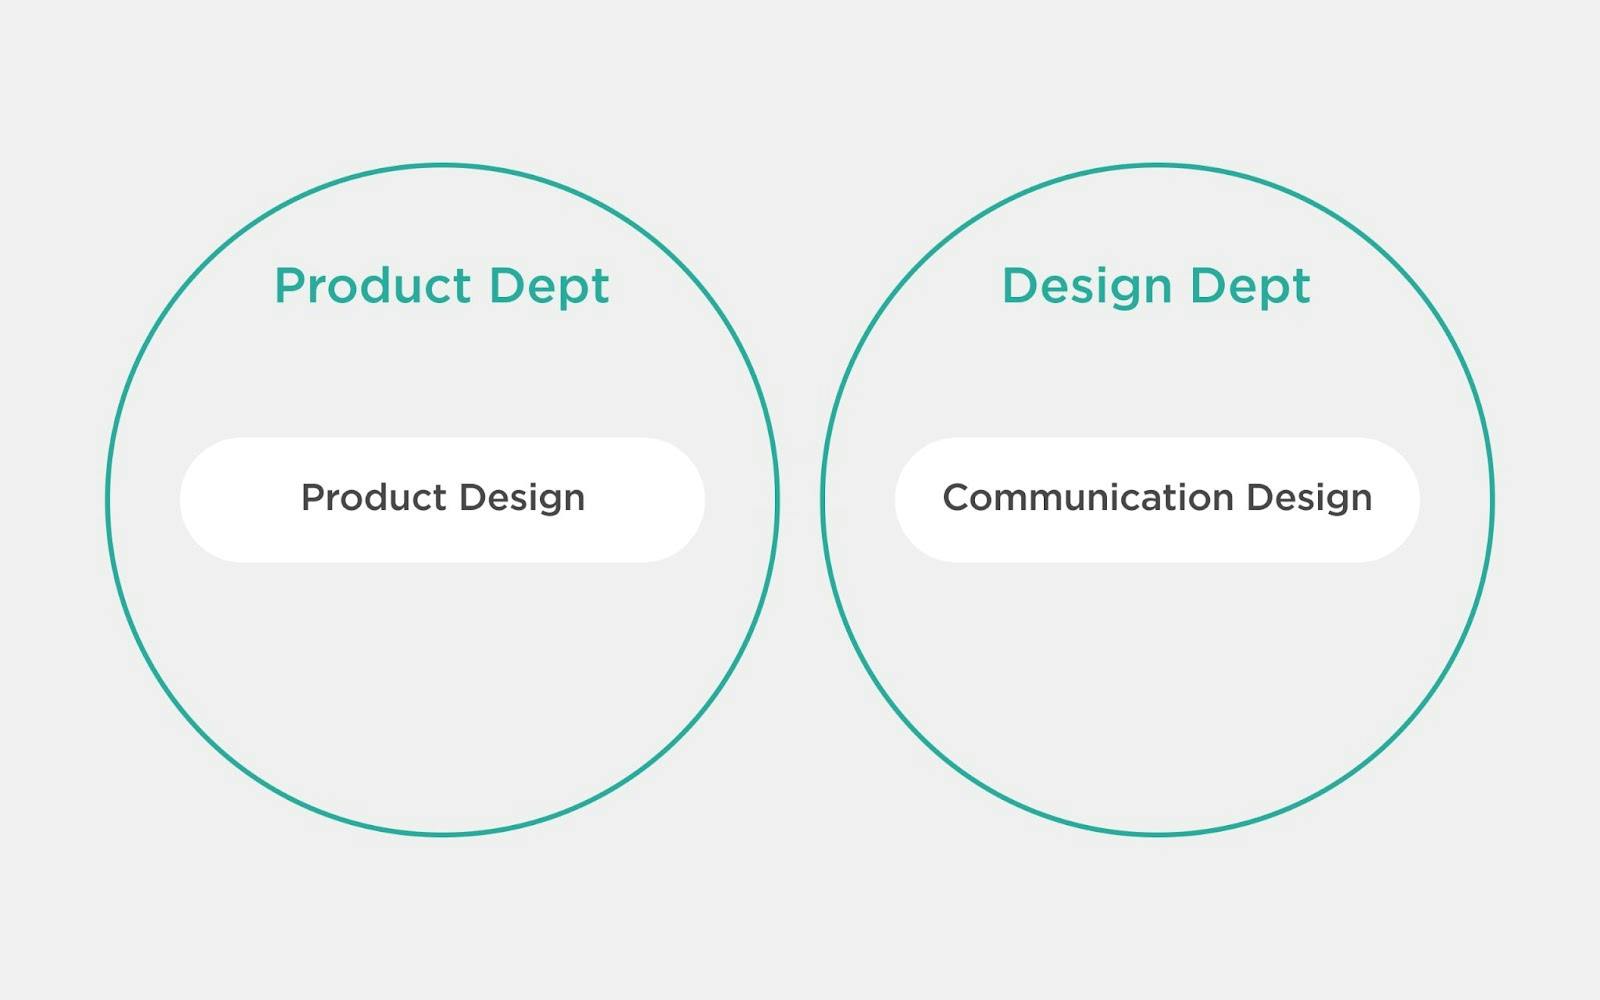 プロダクト組織と、デザイン組織に分かれており、その中に「プロダクトデザイン」と「コミュニケーションデザイン」が入っている図